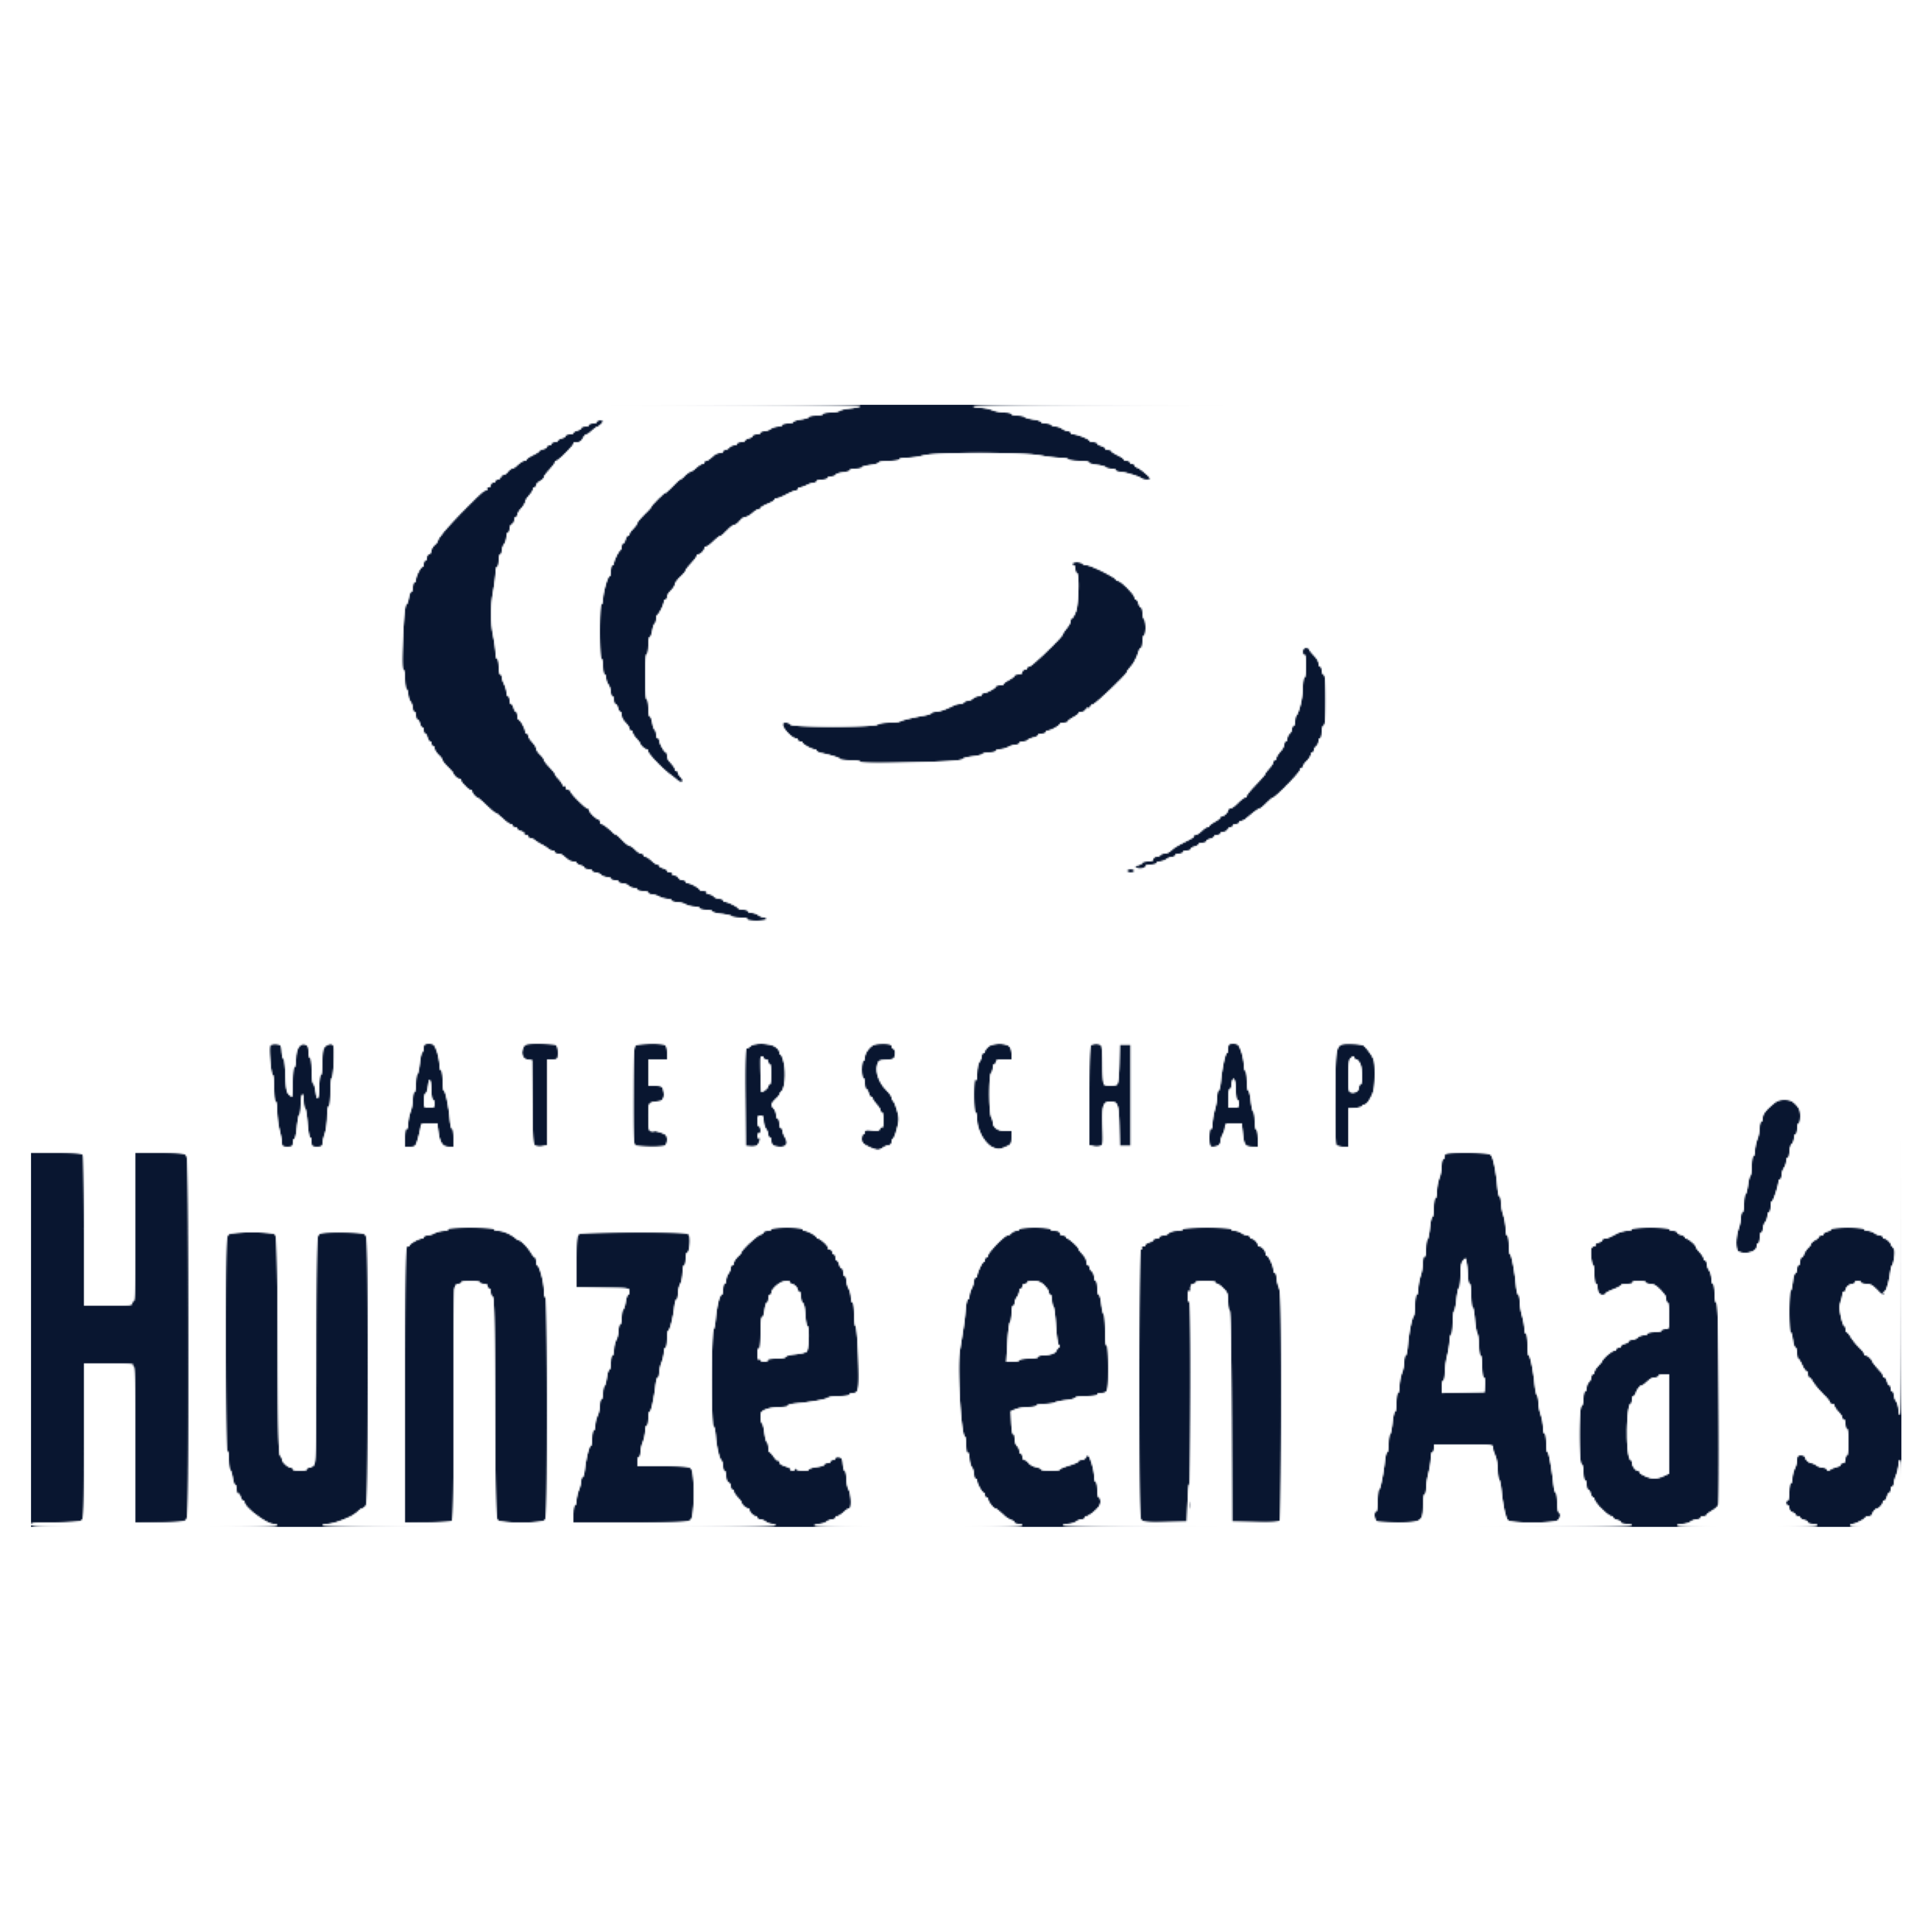 Logo Hunze en Aa's